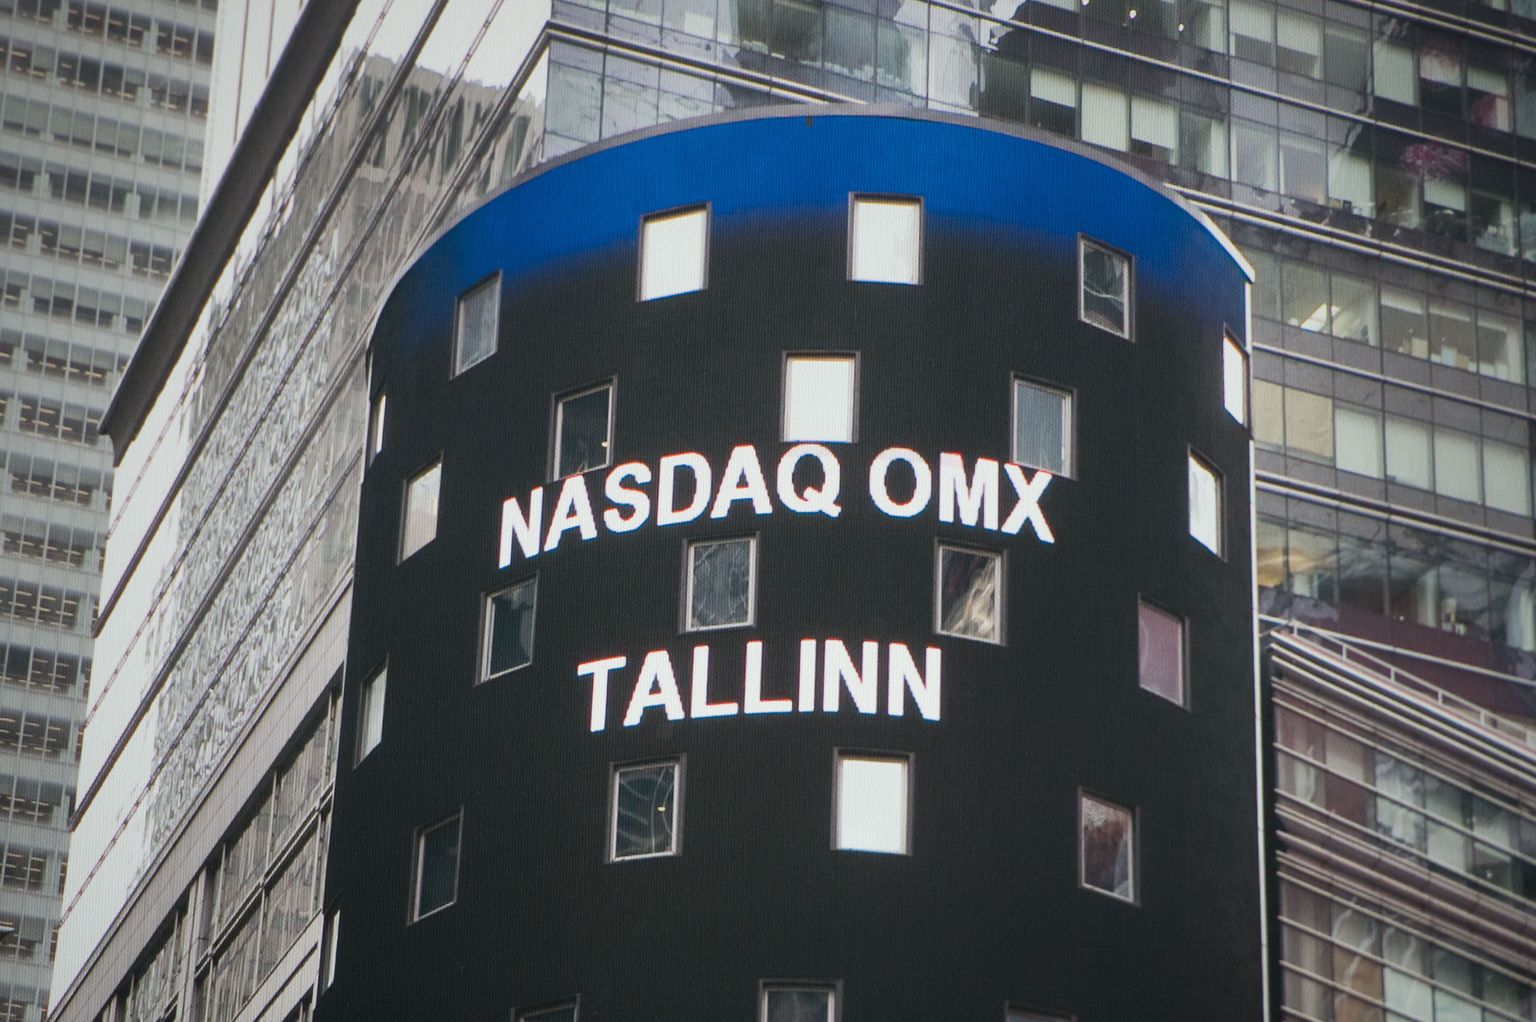 Nadaq OMX Tallinn